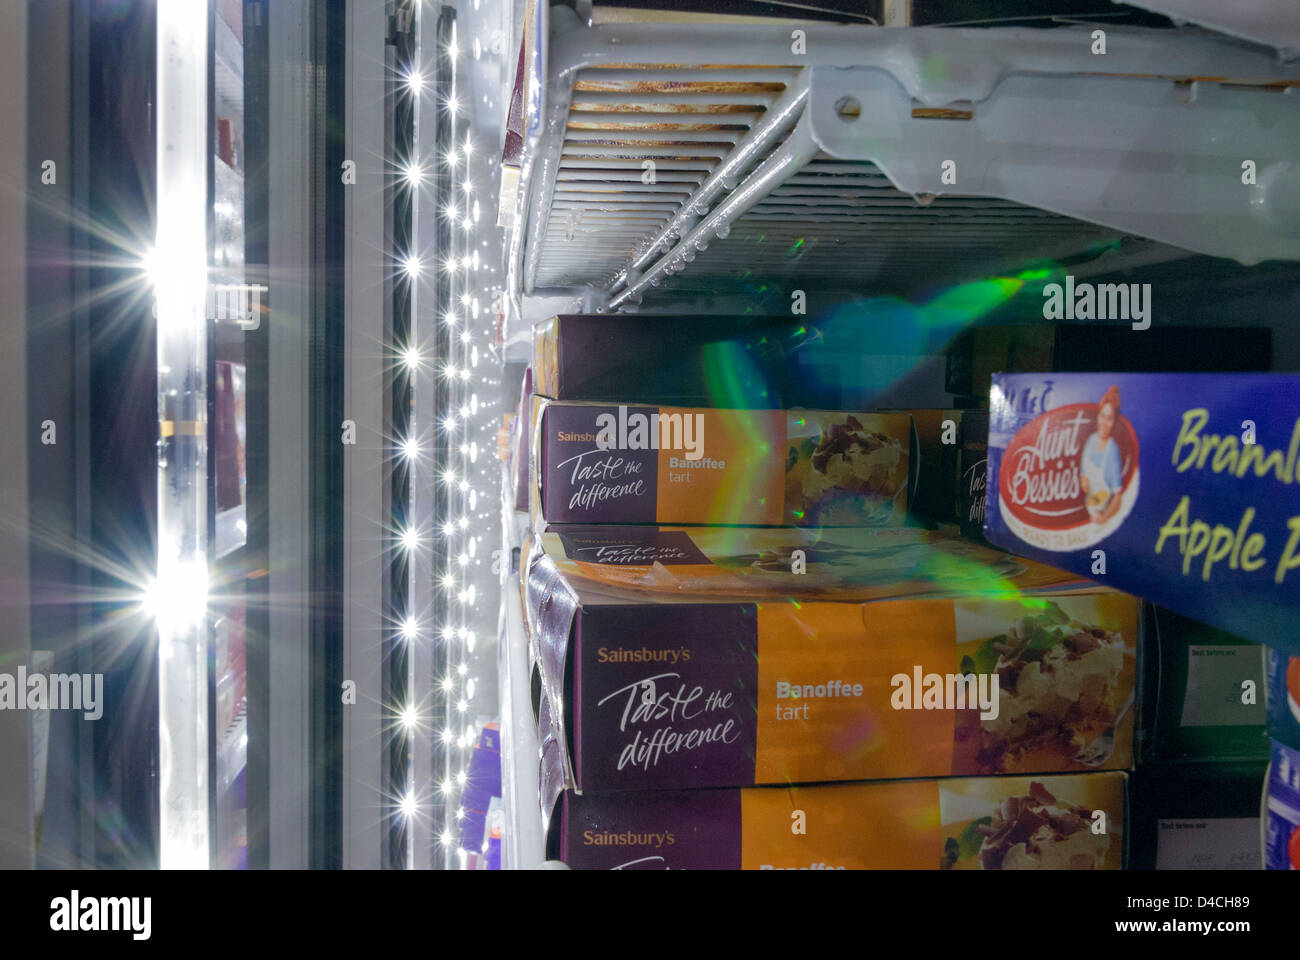 À l'intérieur de supermarchés sainsbury congélateur armoire avec affichage "goûtez la différence" Banque D'Images